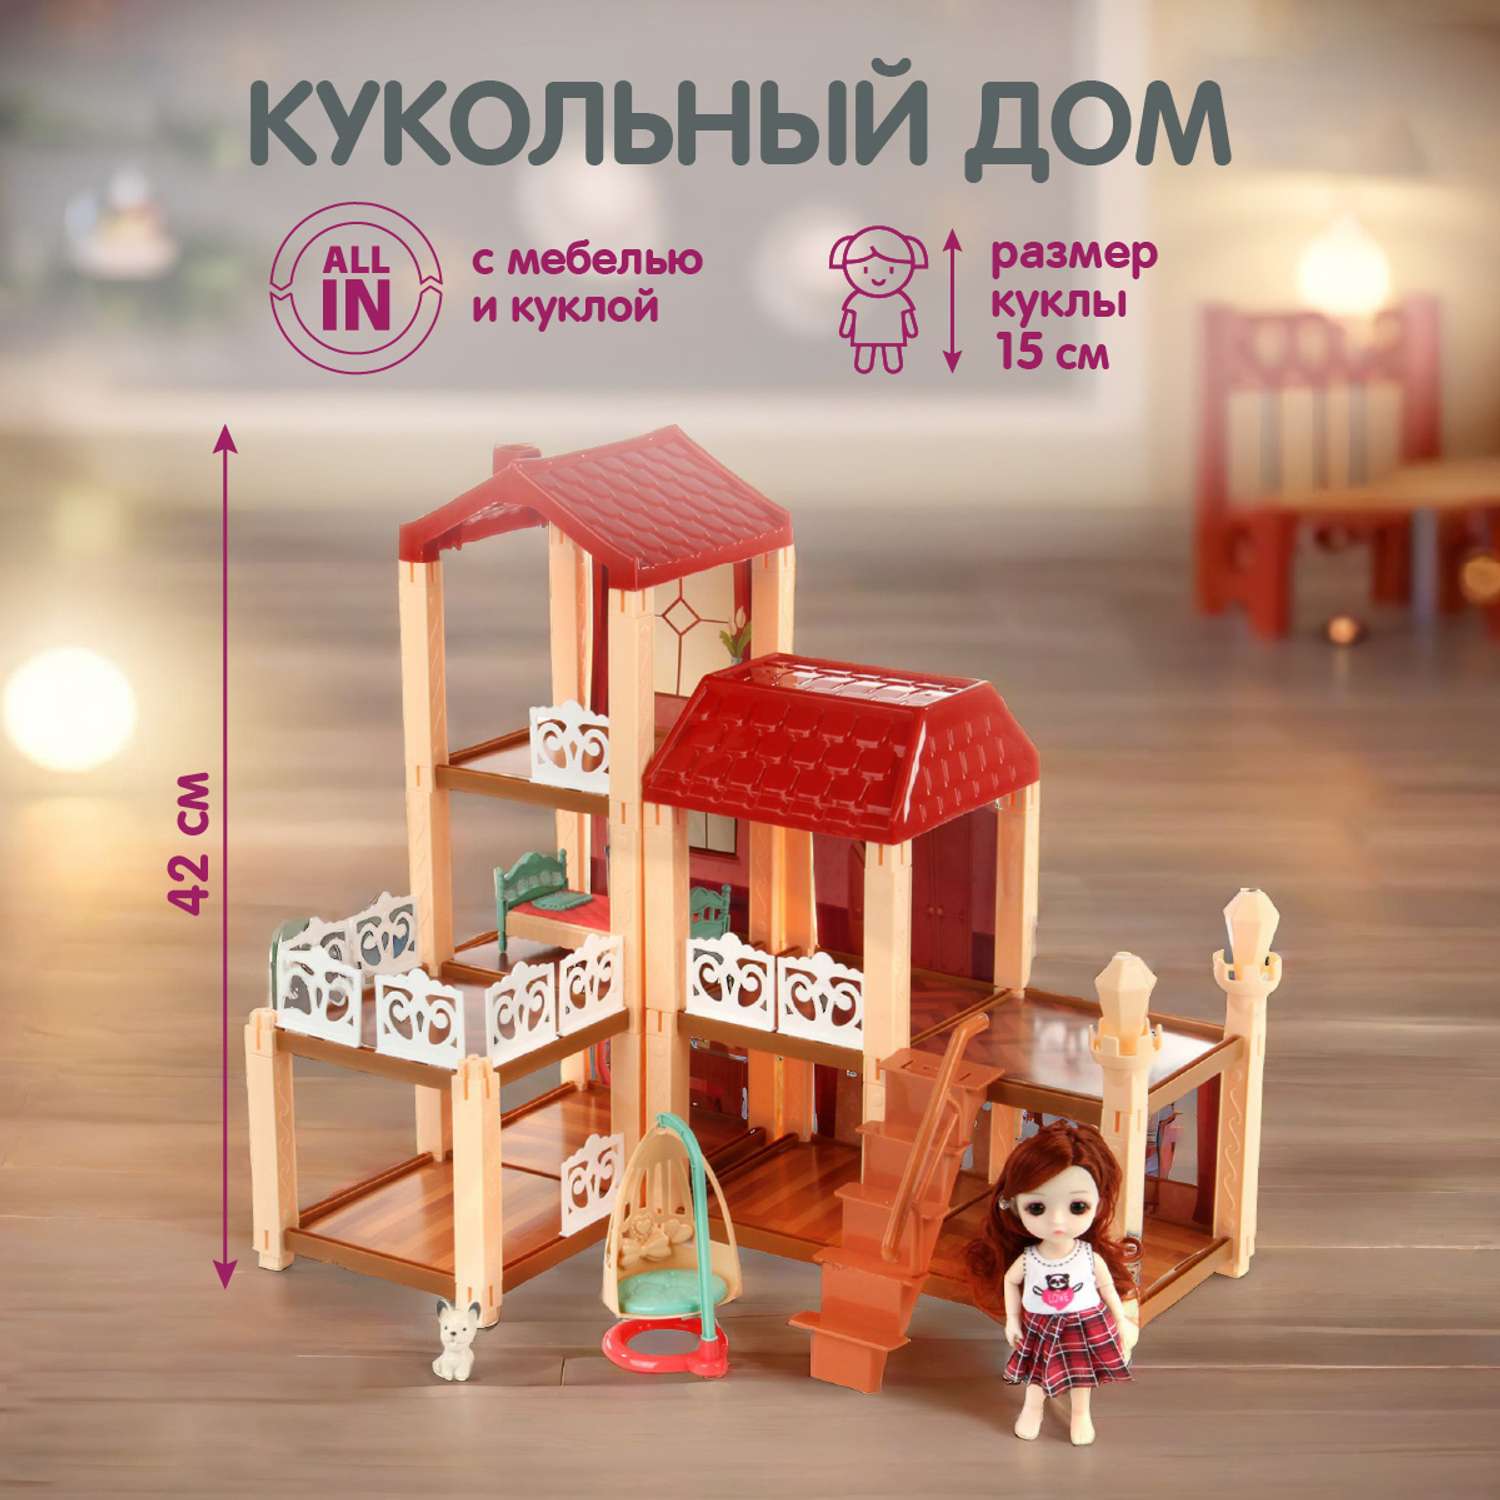 Кукольный домик Veld Co мебель кукла питомец 120823 - фото 1